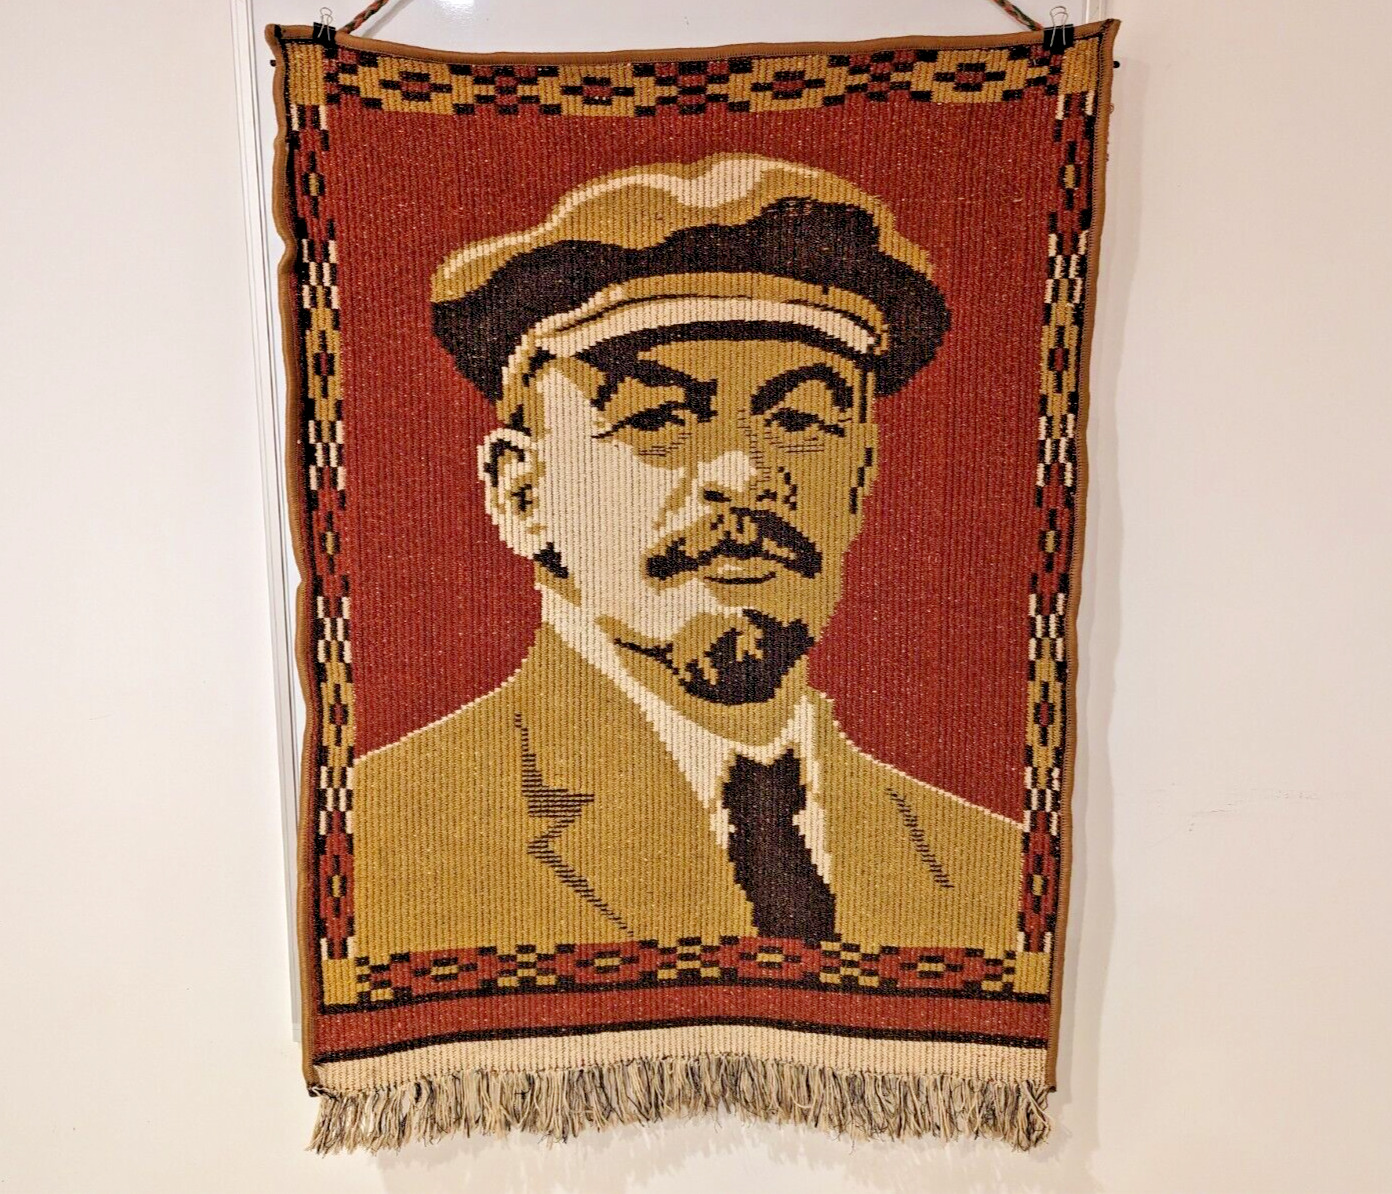 Vintage Soviet Propaganda Wall Carpet - Homespun Portrait of Lenin - Stalin Era